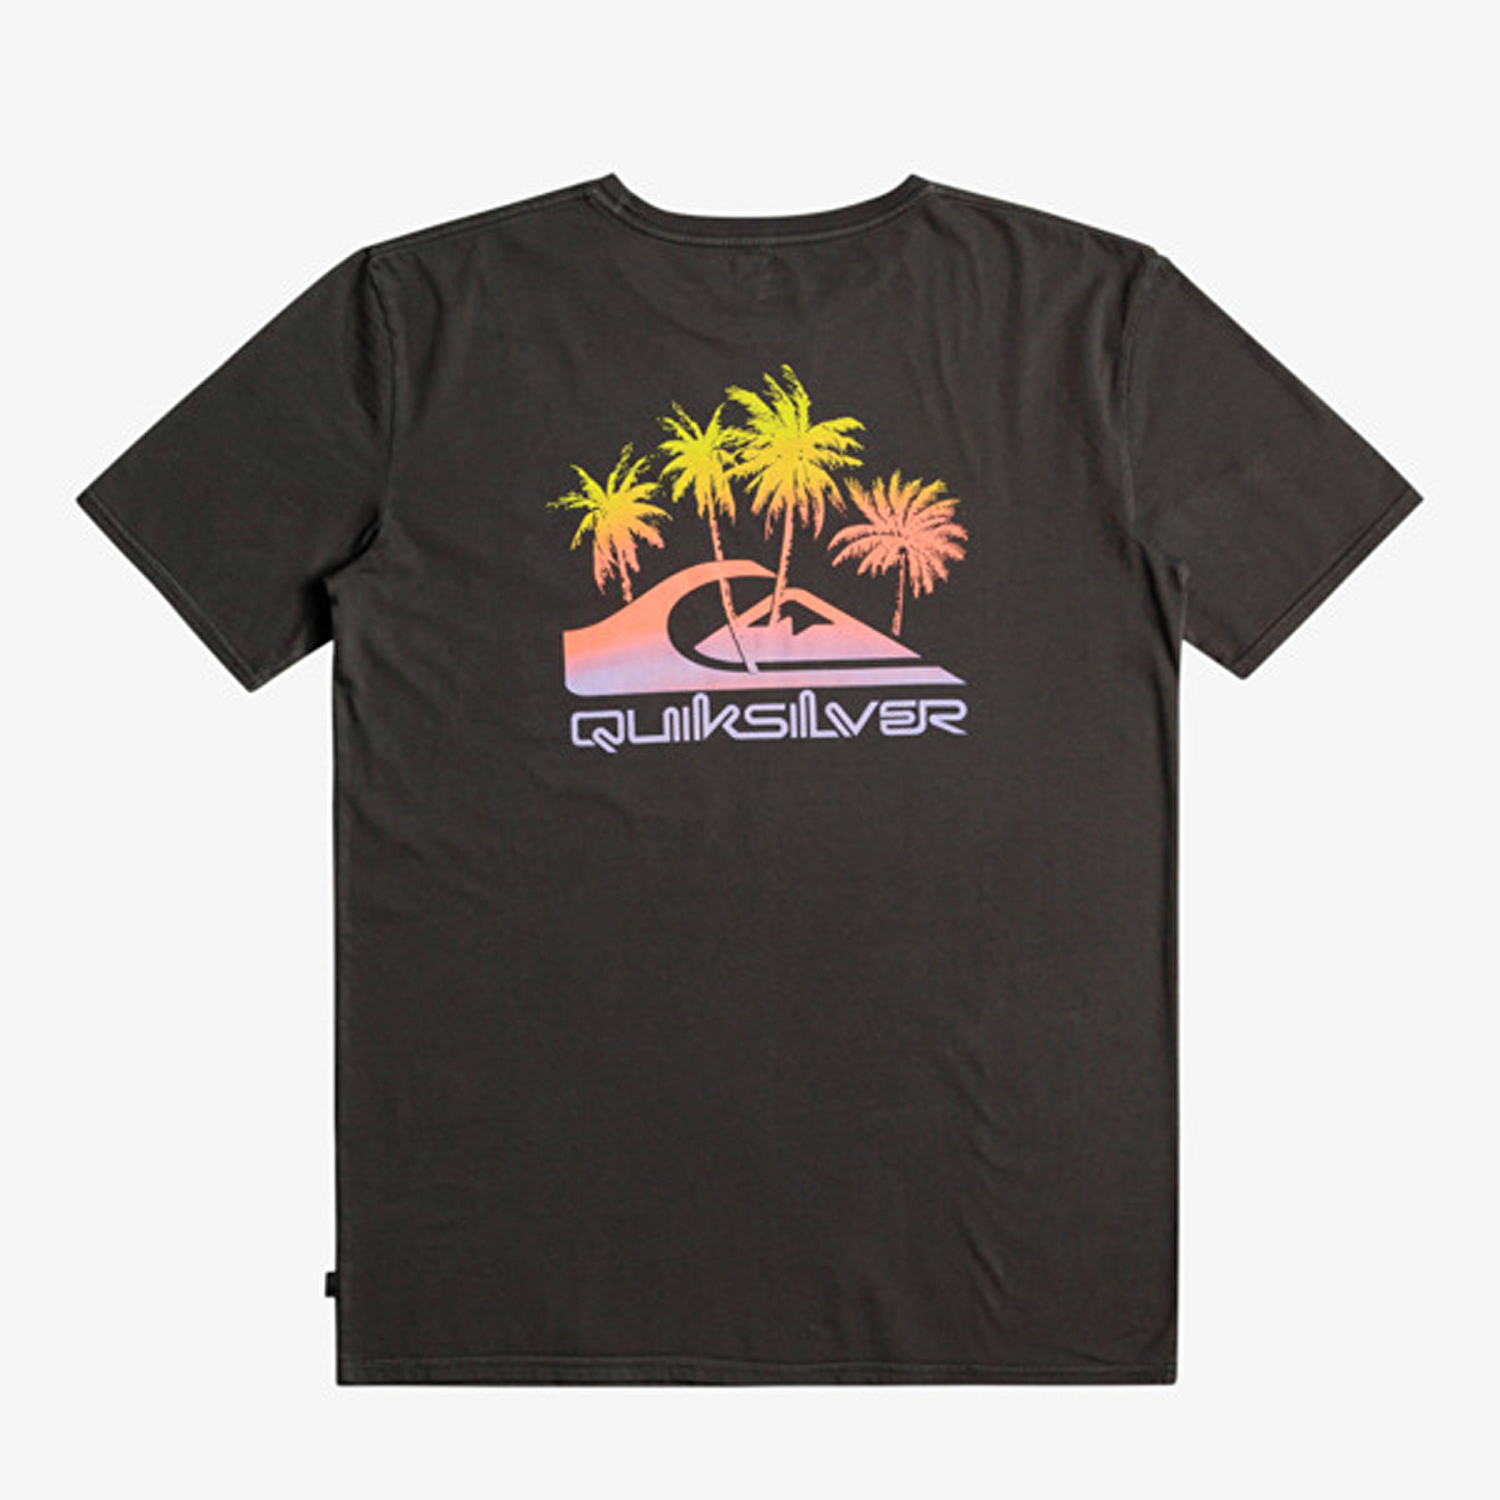 Quiksilver Pastimeparadise Erkek Kısa Kollu T-Shirt